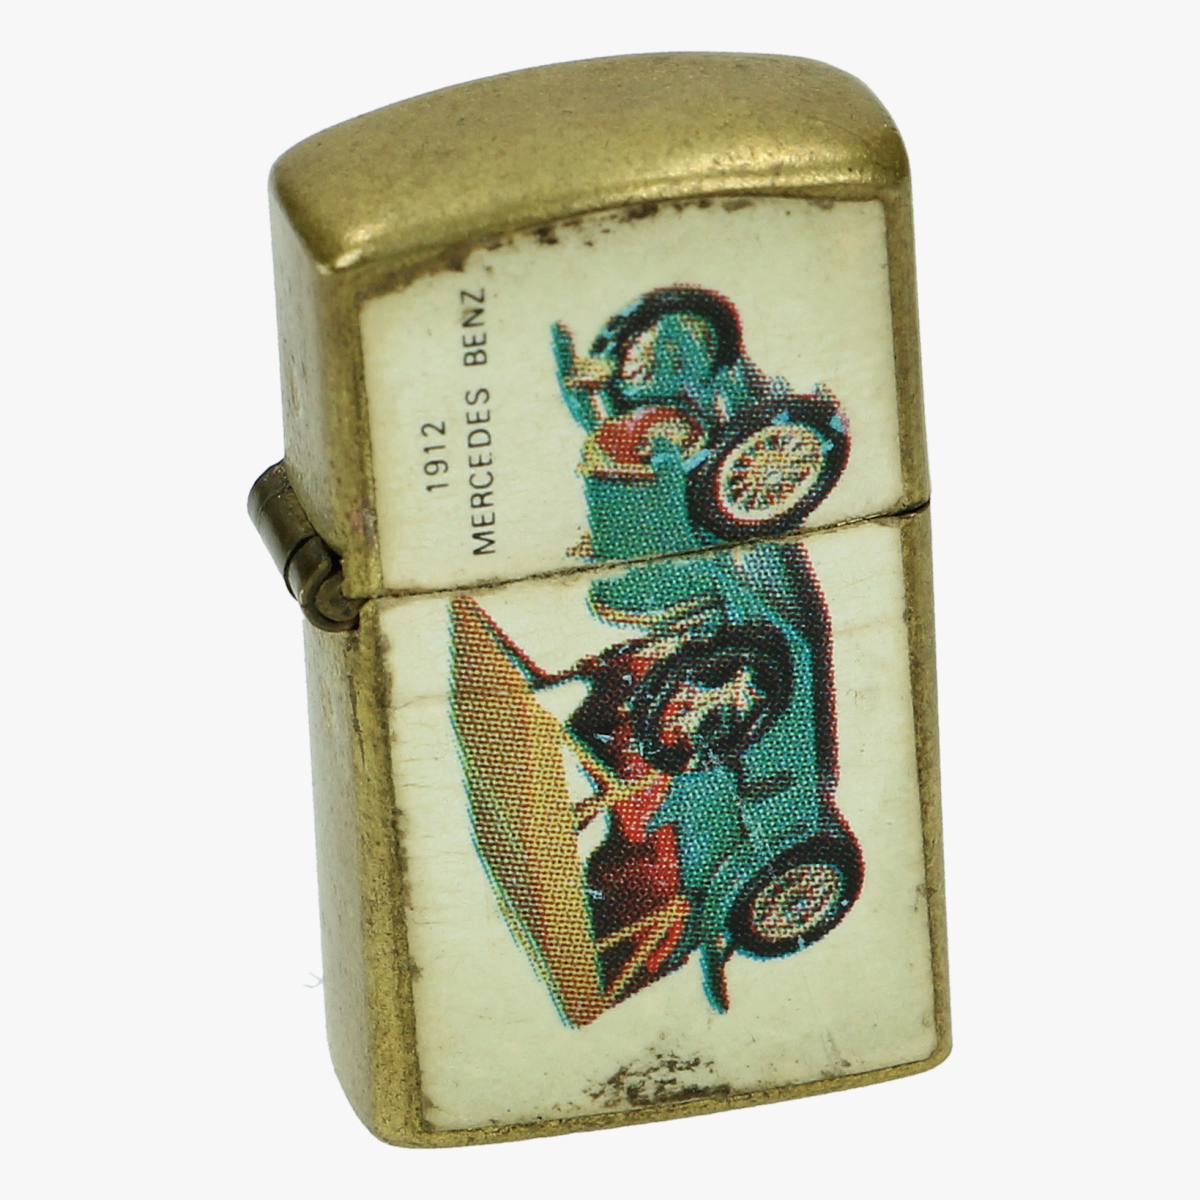 Afbeeldingen van aansteker mini mercedes benz 1912